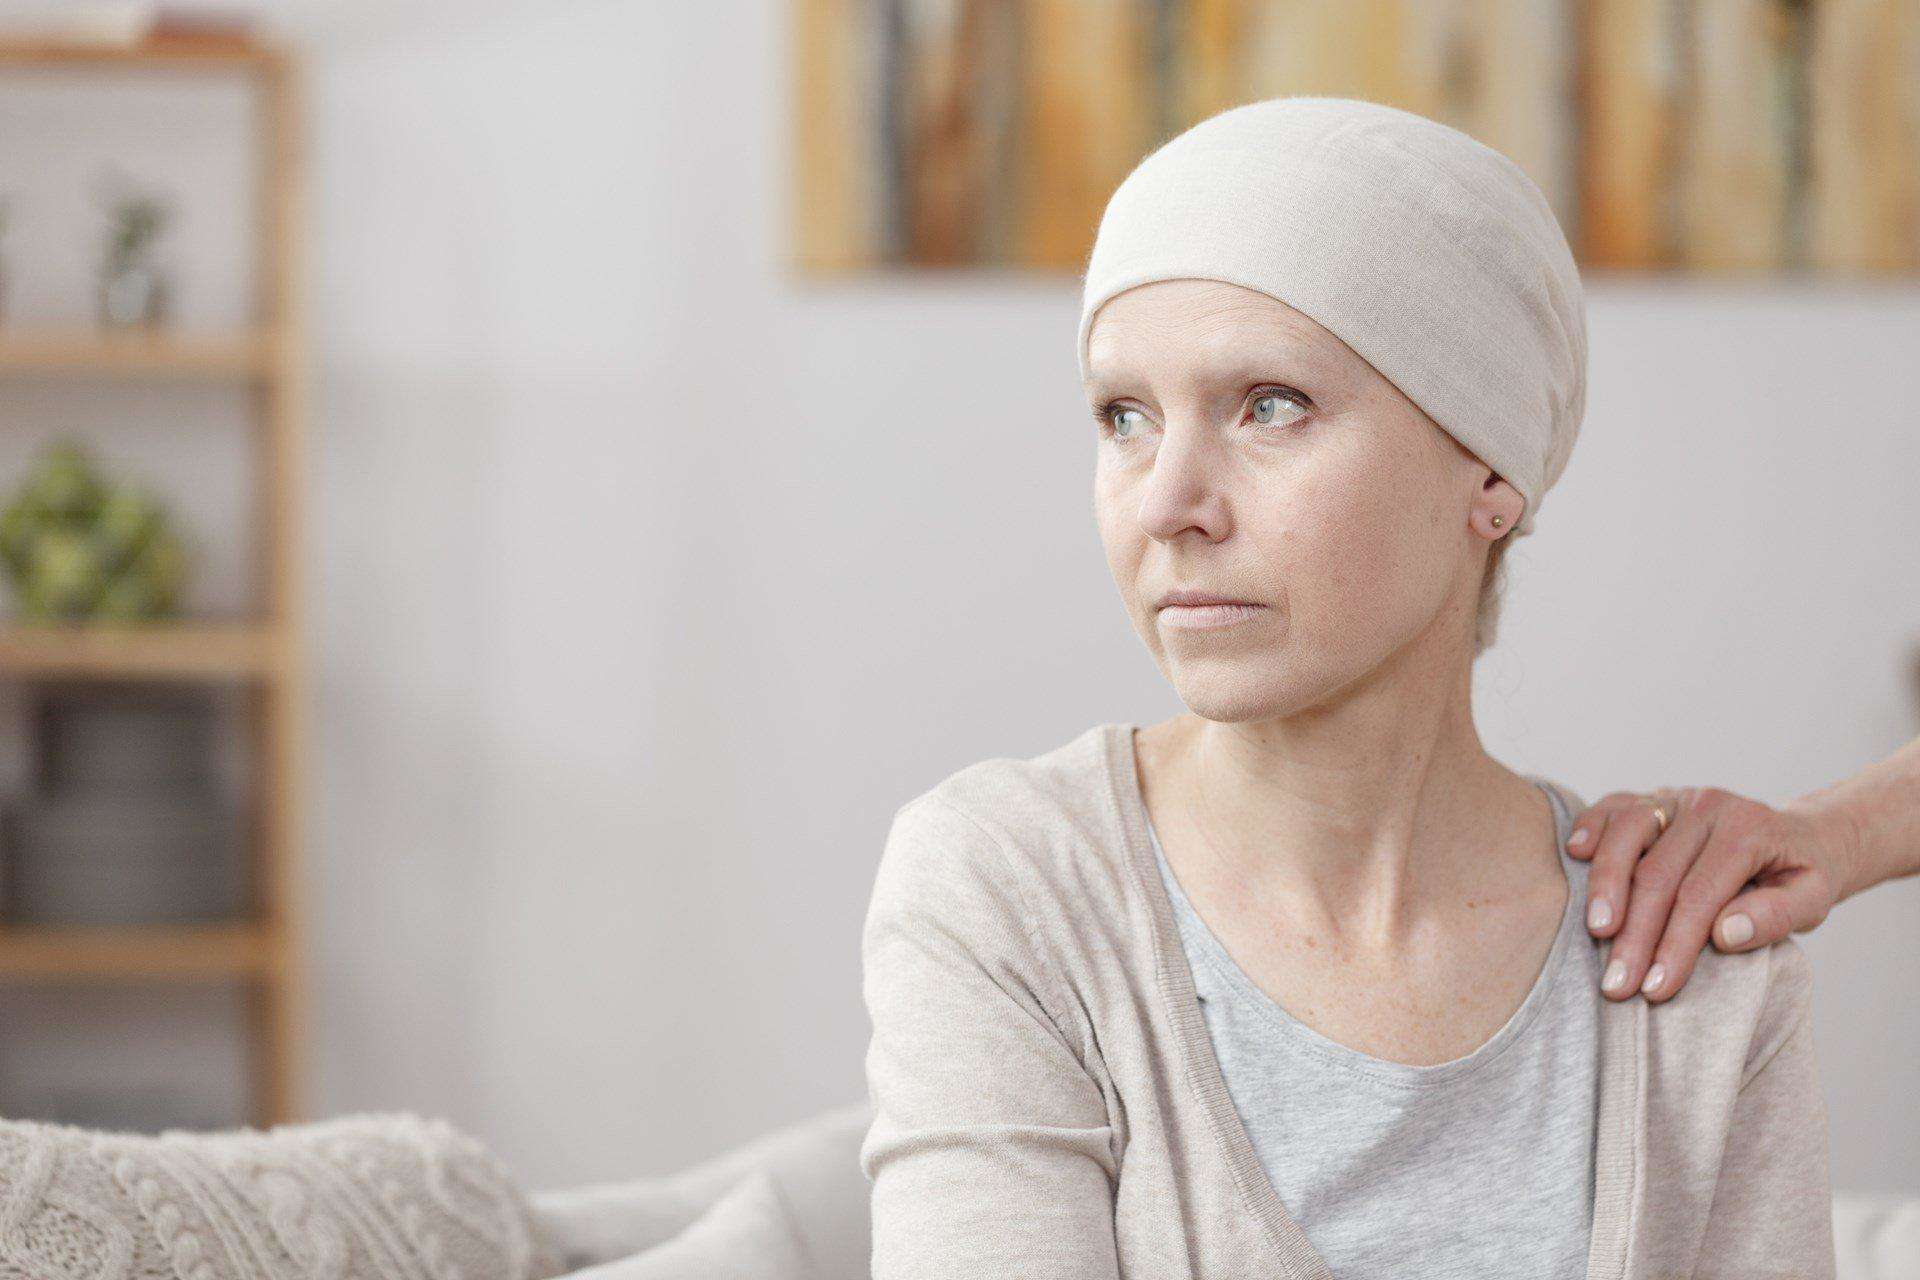 लिवर कैंसर के प्रारंभिक लक्षण और निदान के लिए जरूरी टेस्ट